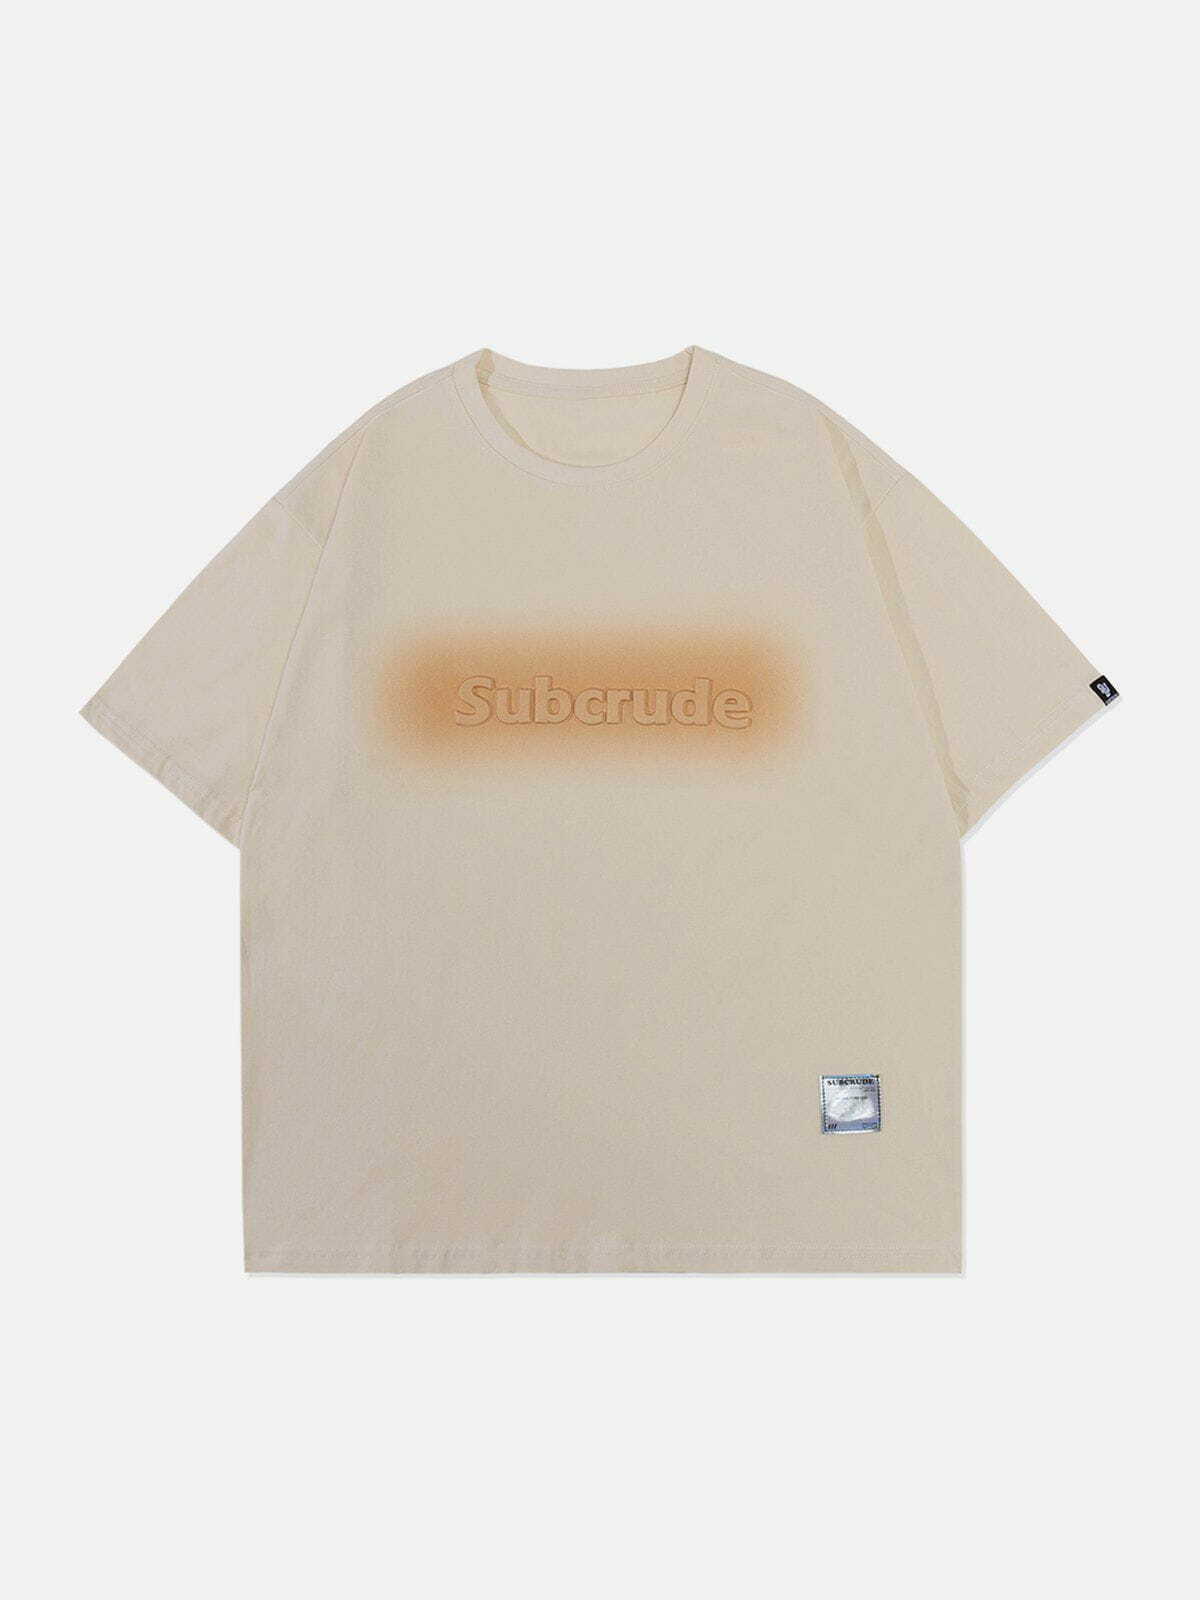 retro blur print tshirt edgy  vibrant streetwear essential 6863